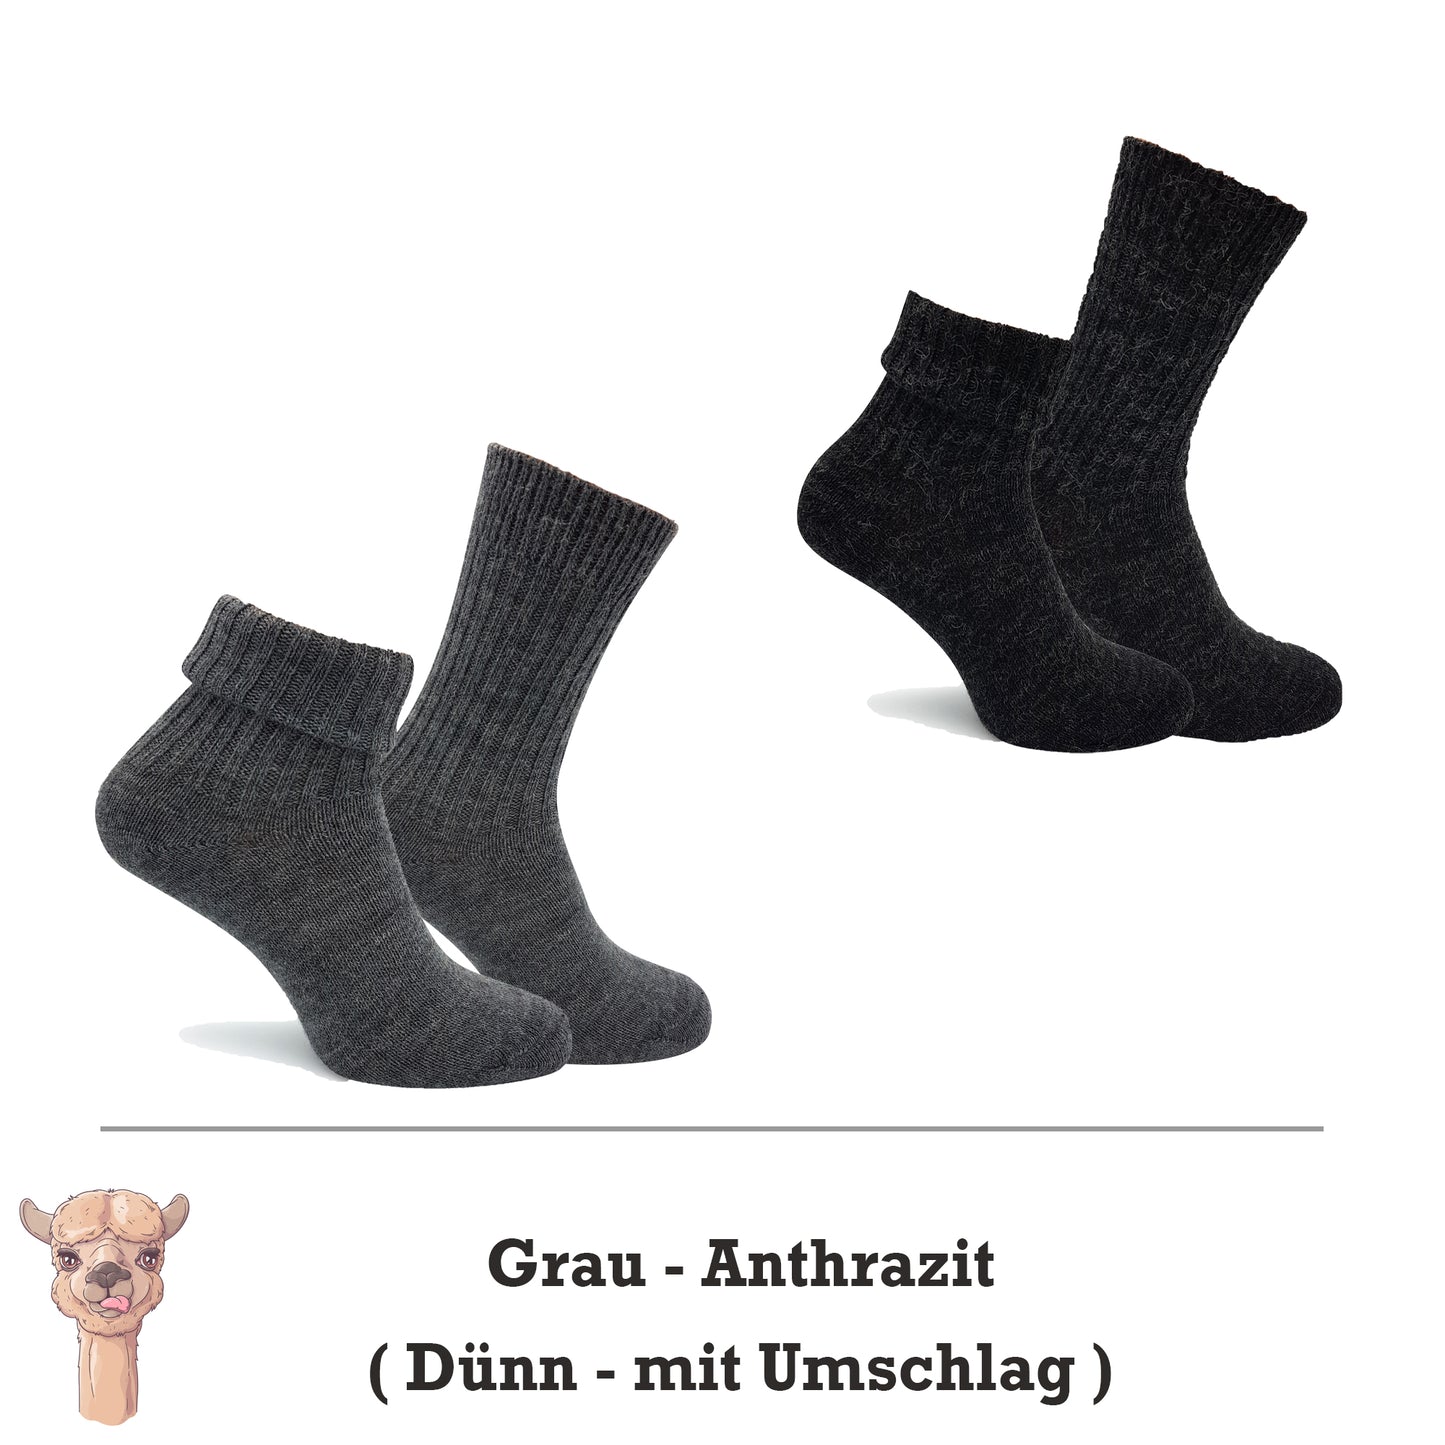 Alpaka Socken, Wollsocken (2 Paar) - Dünn, mit Umschlag (Grau/Anthrazit)